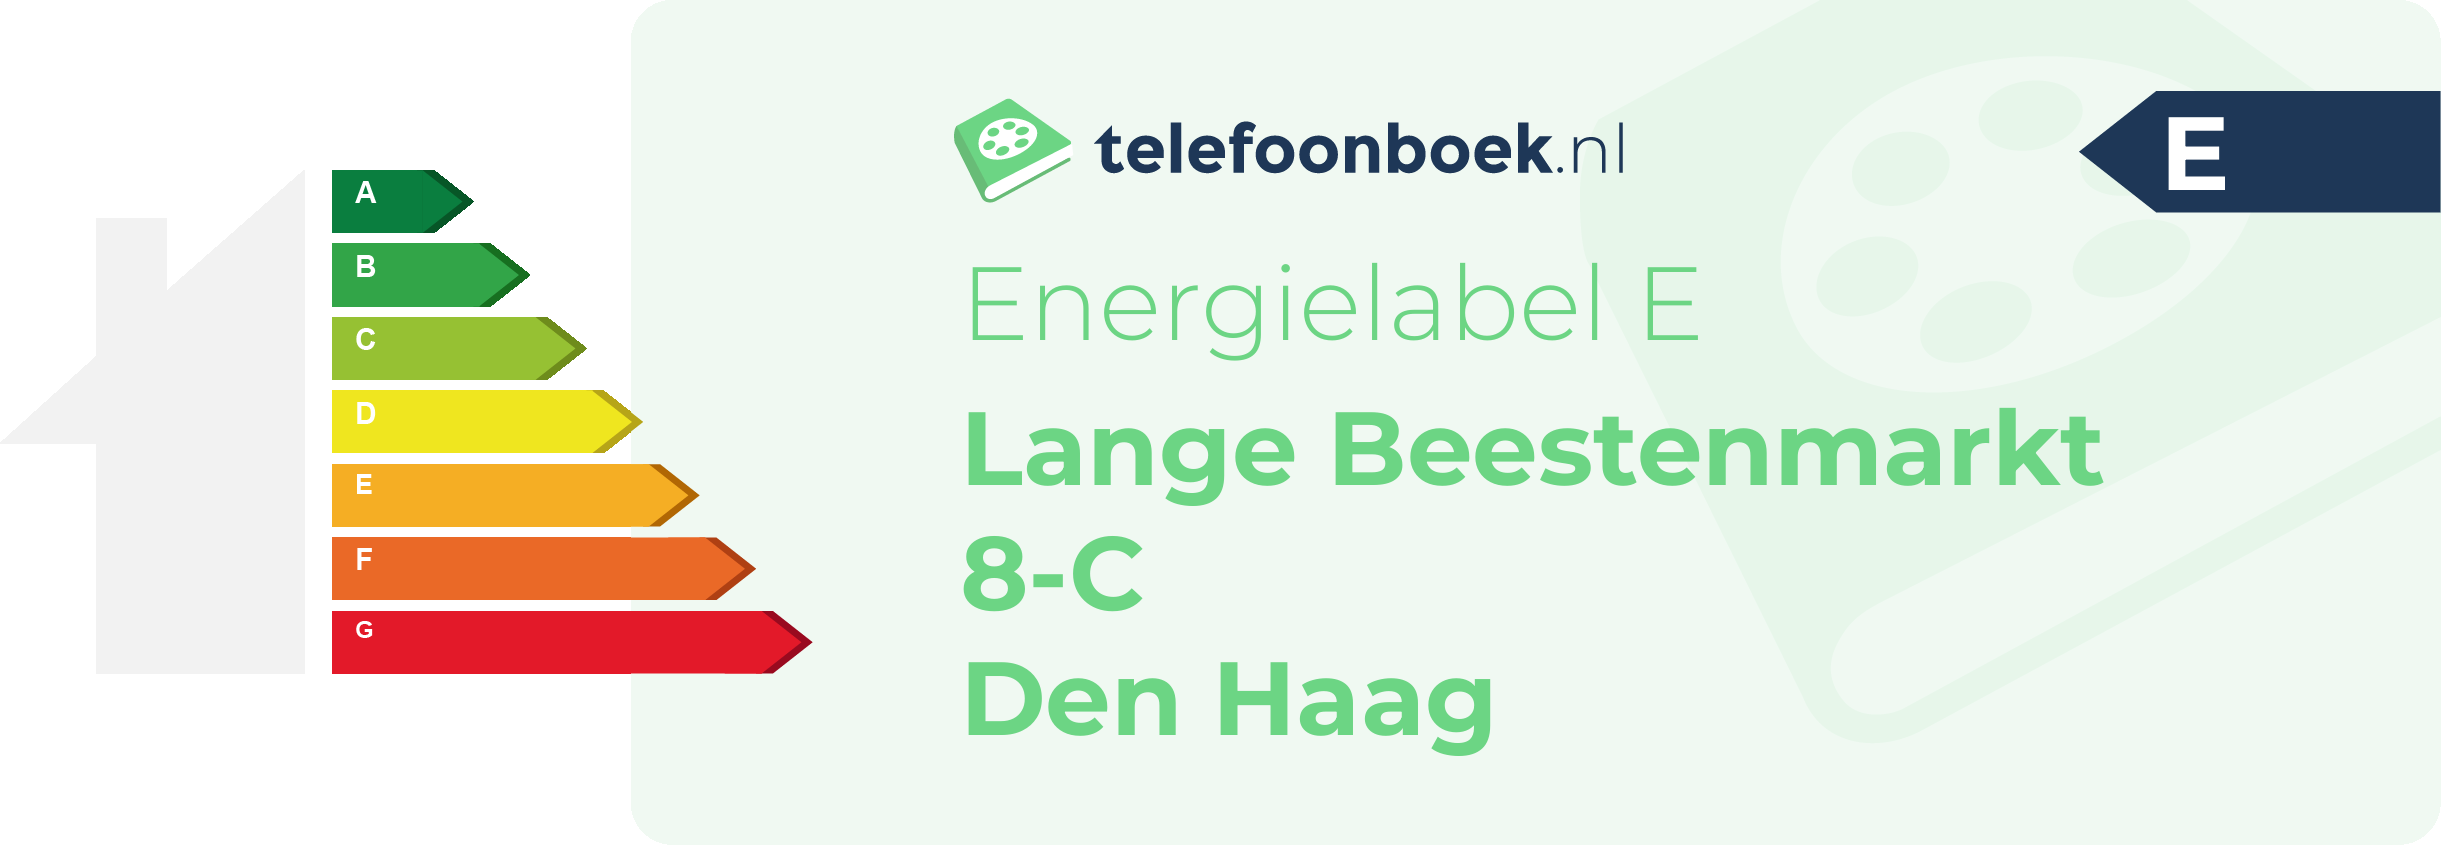 Energielabel Lange Beestenmarkt 8-C Den Haag